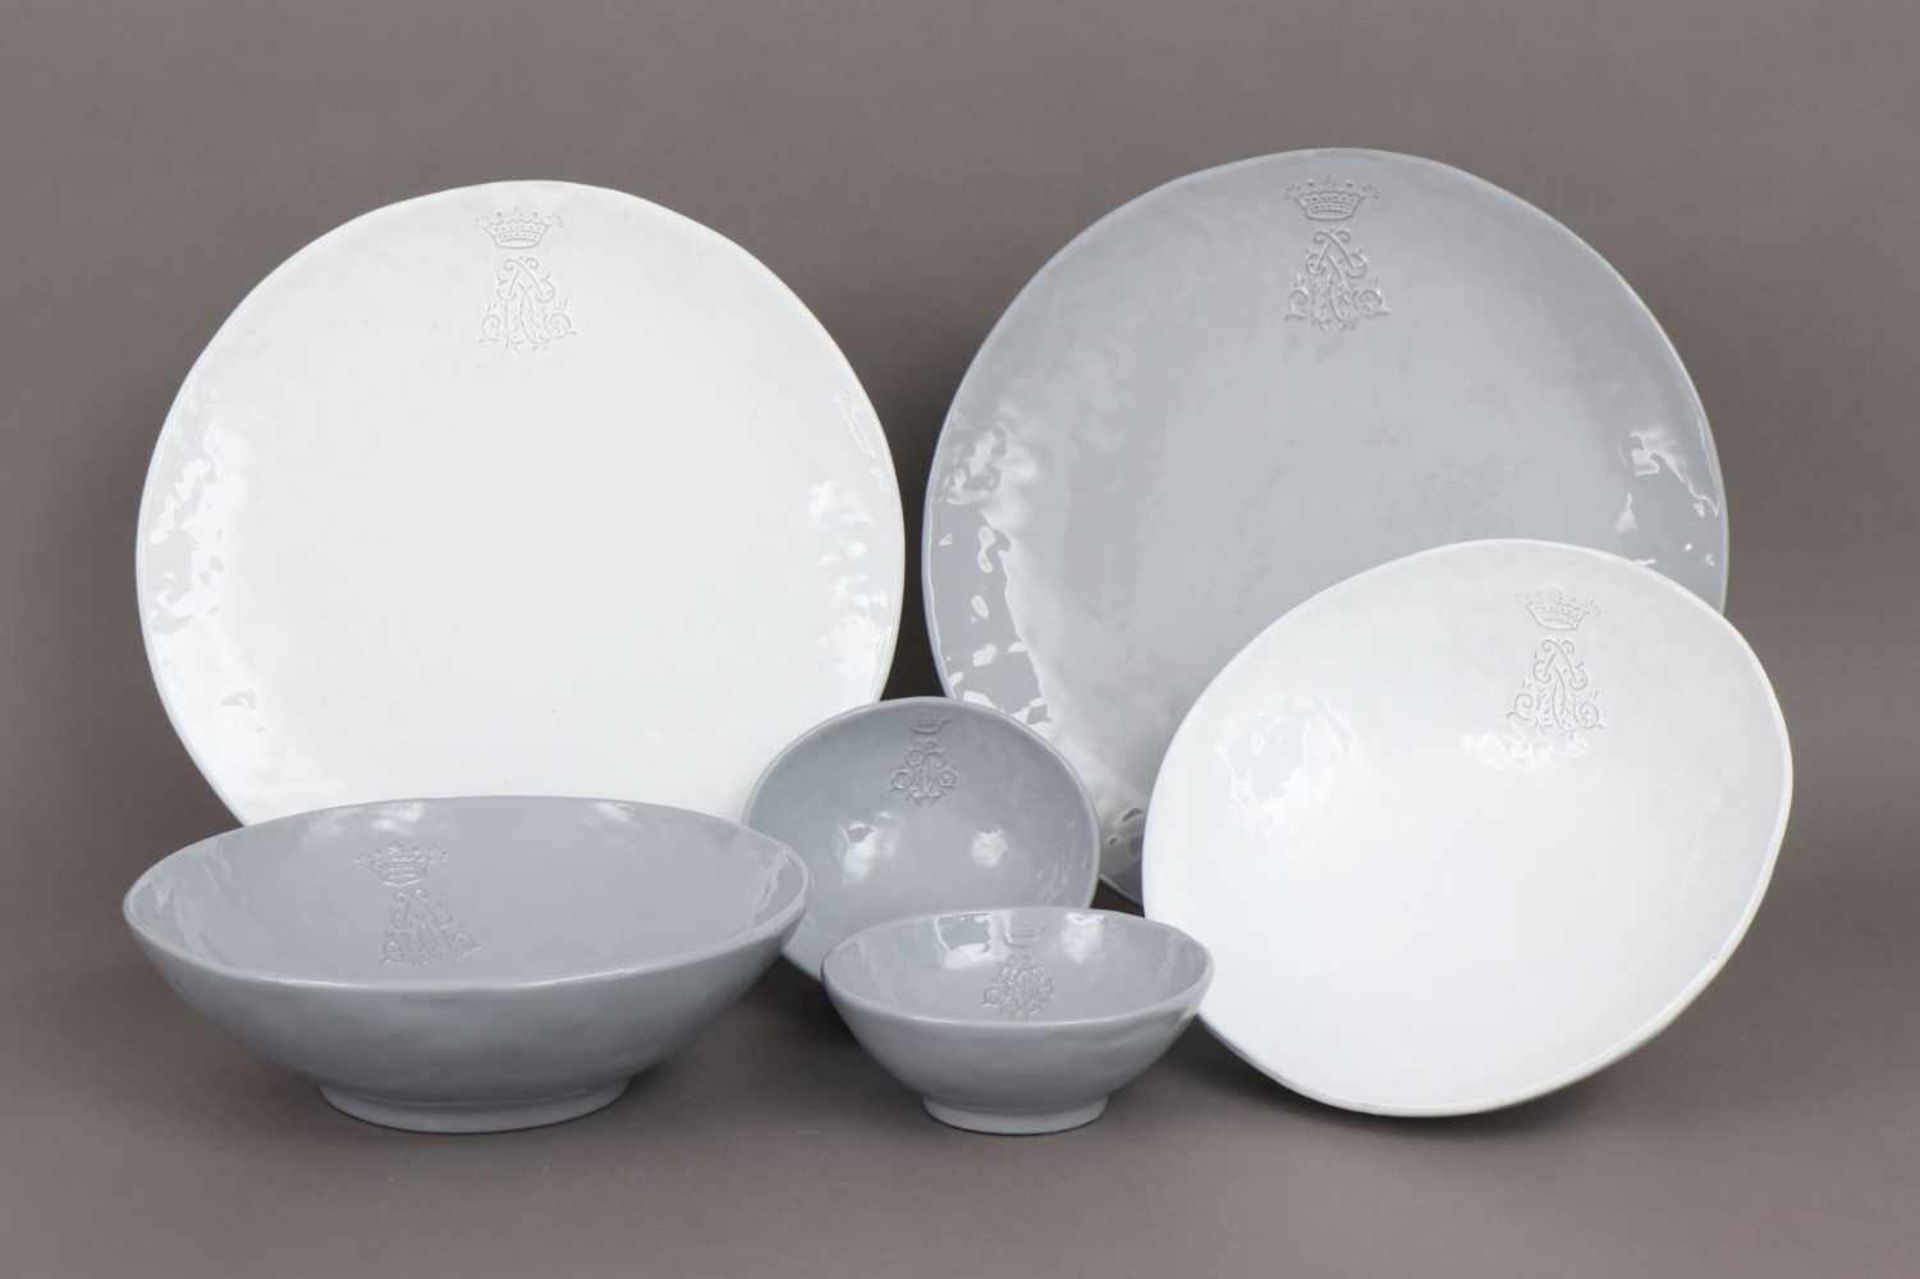 6 CASAGENT Keramikschalen und Teller runde, gemuldete Schalen, 2x groß (D 29cm), 2x klein (D 17cm),